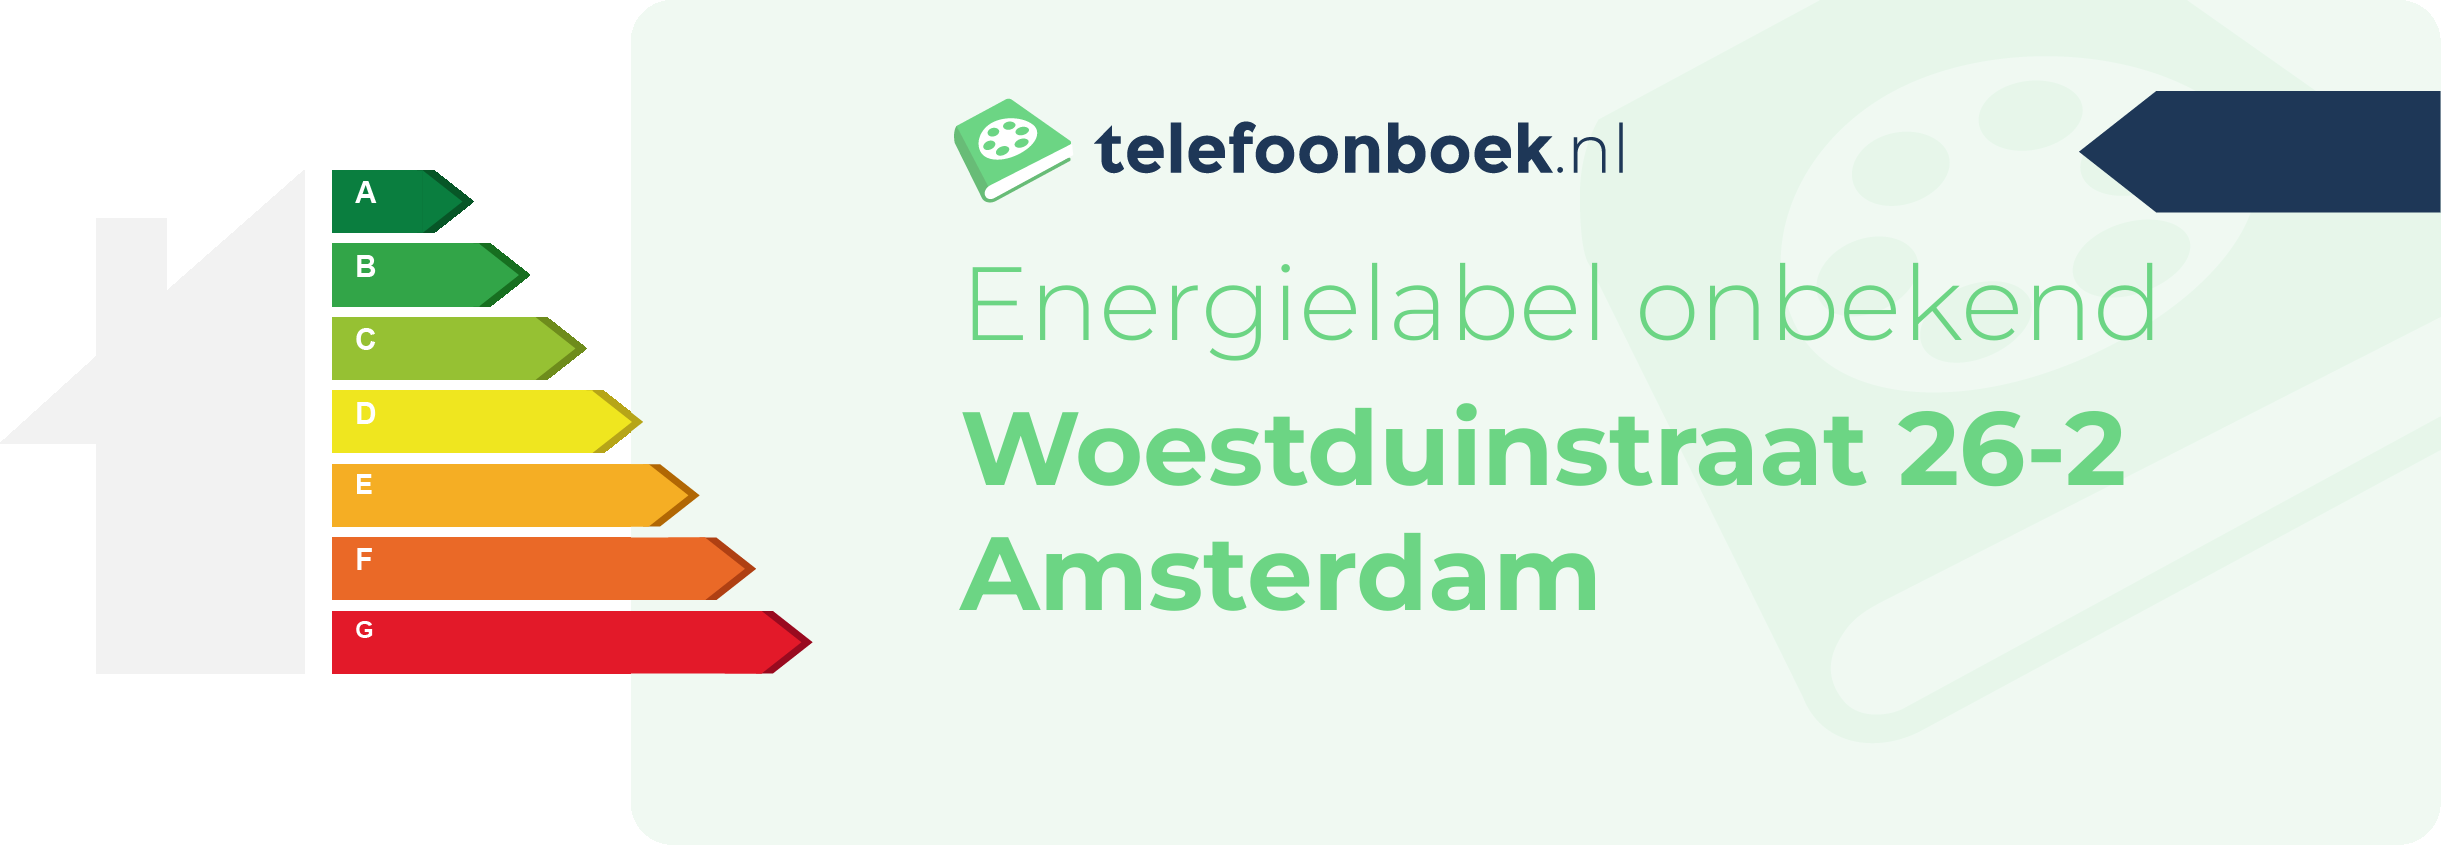 Energielabel Woestduinstraat 26-2 Amsterdam